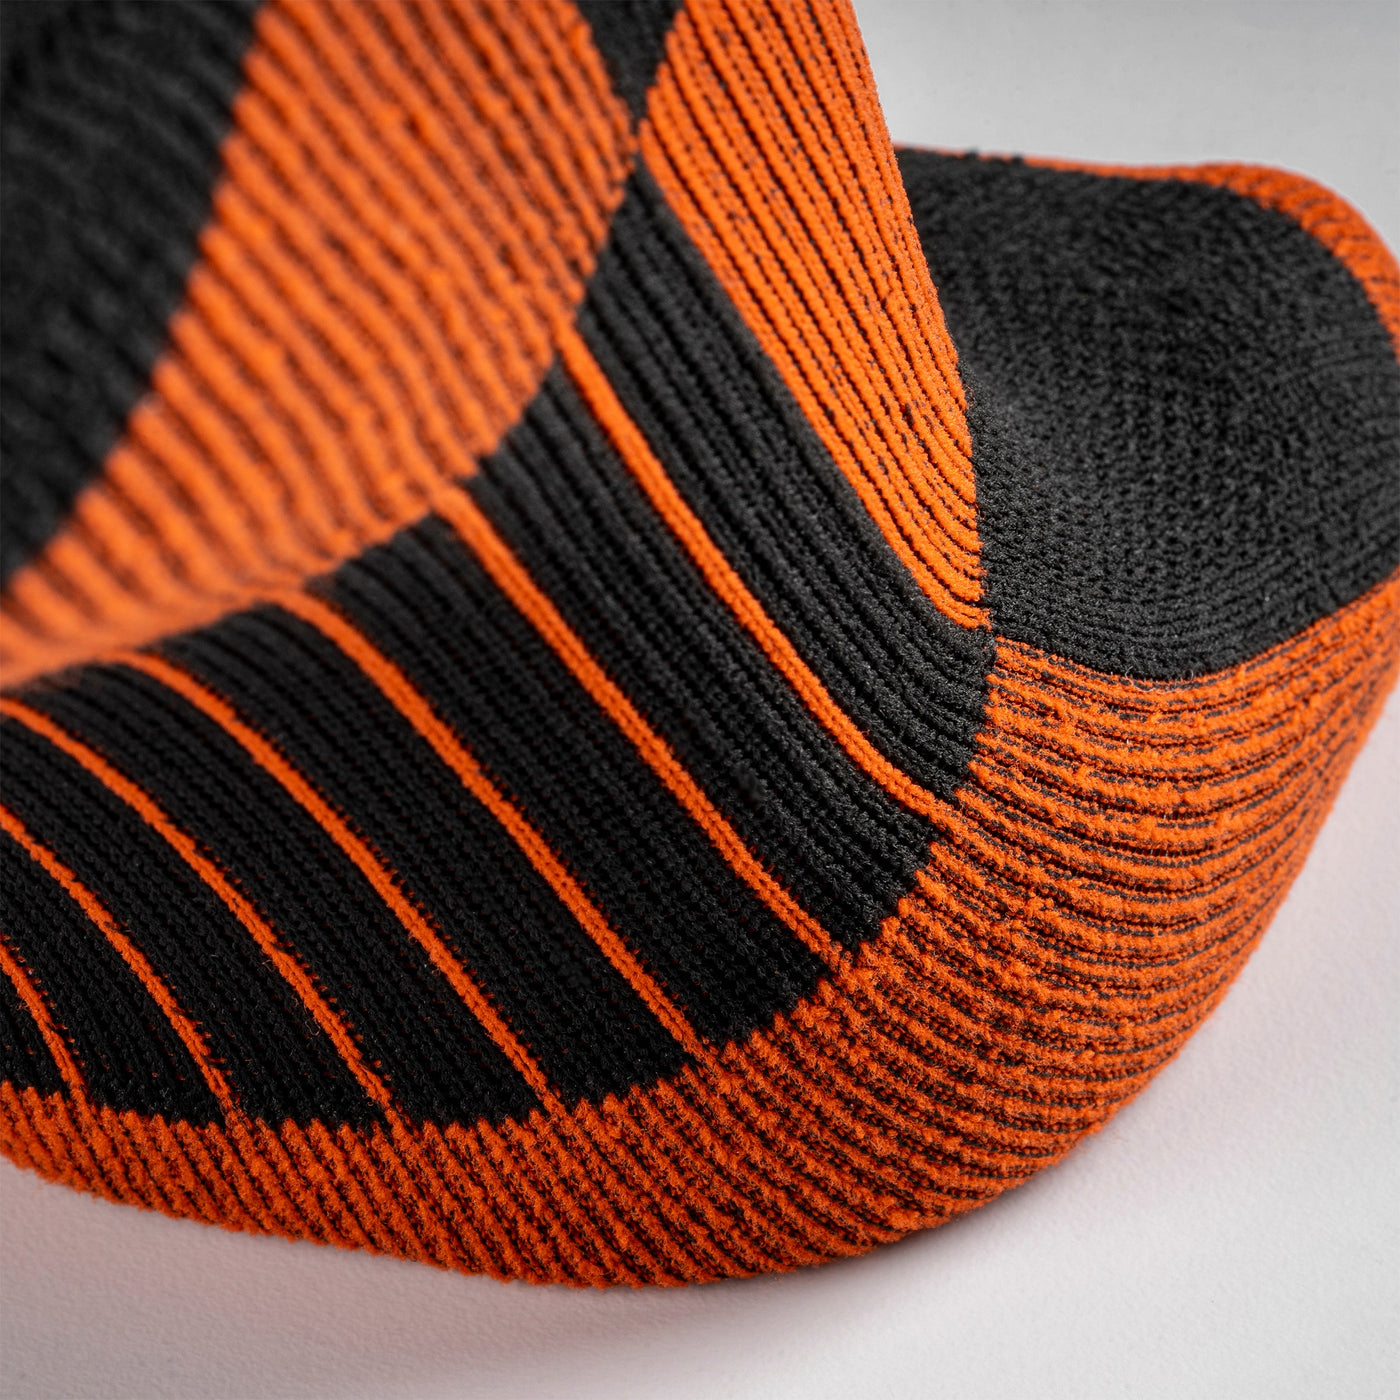 MudGear Quarter (¼) Crew Socks - Black/Orange (2 pair pack)